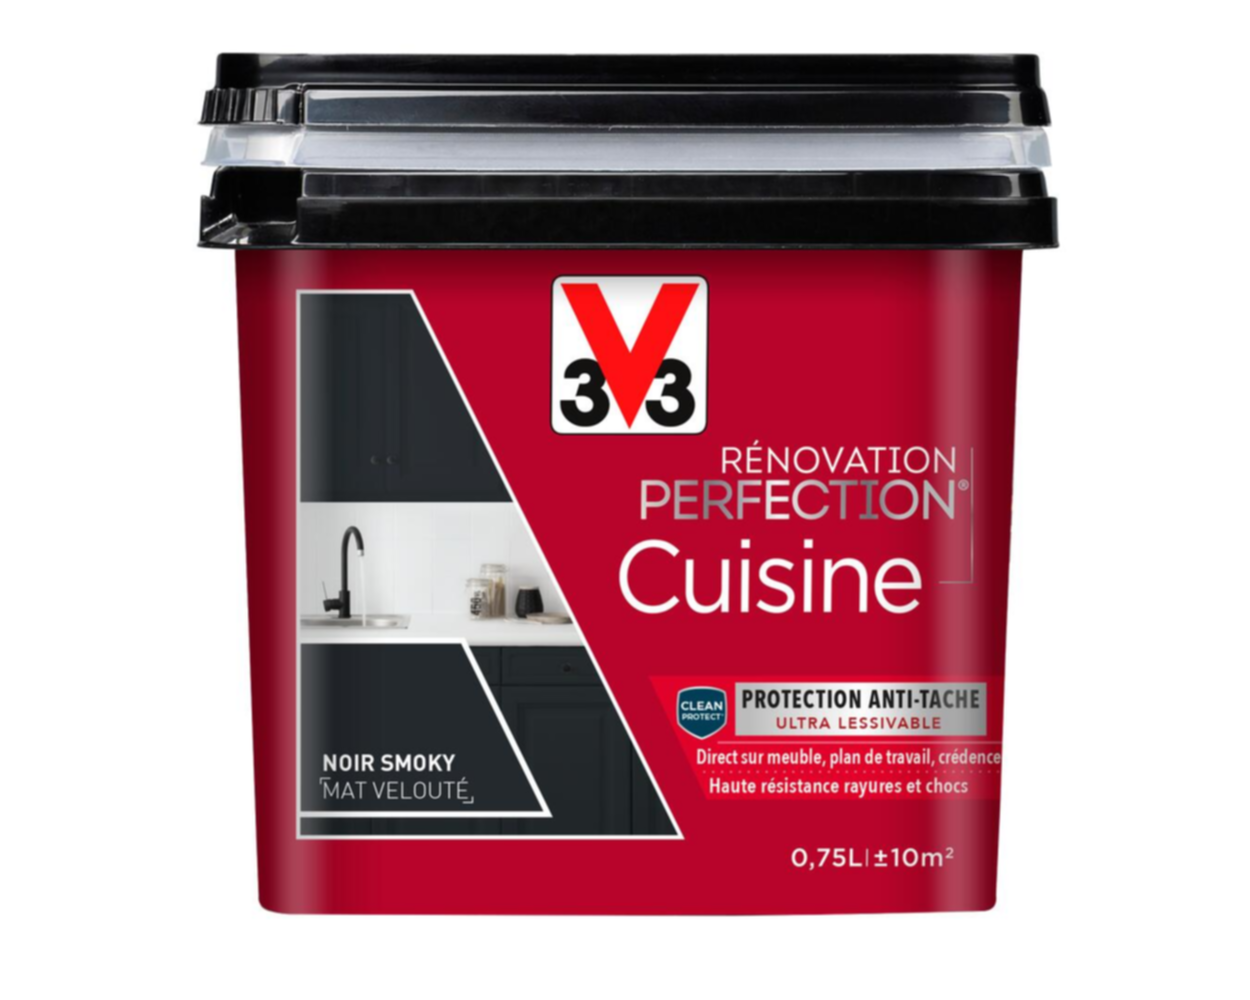 Peinture rénovation cuisine Perfection noir smoky mat 0,75l - V33